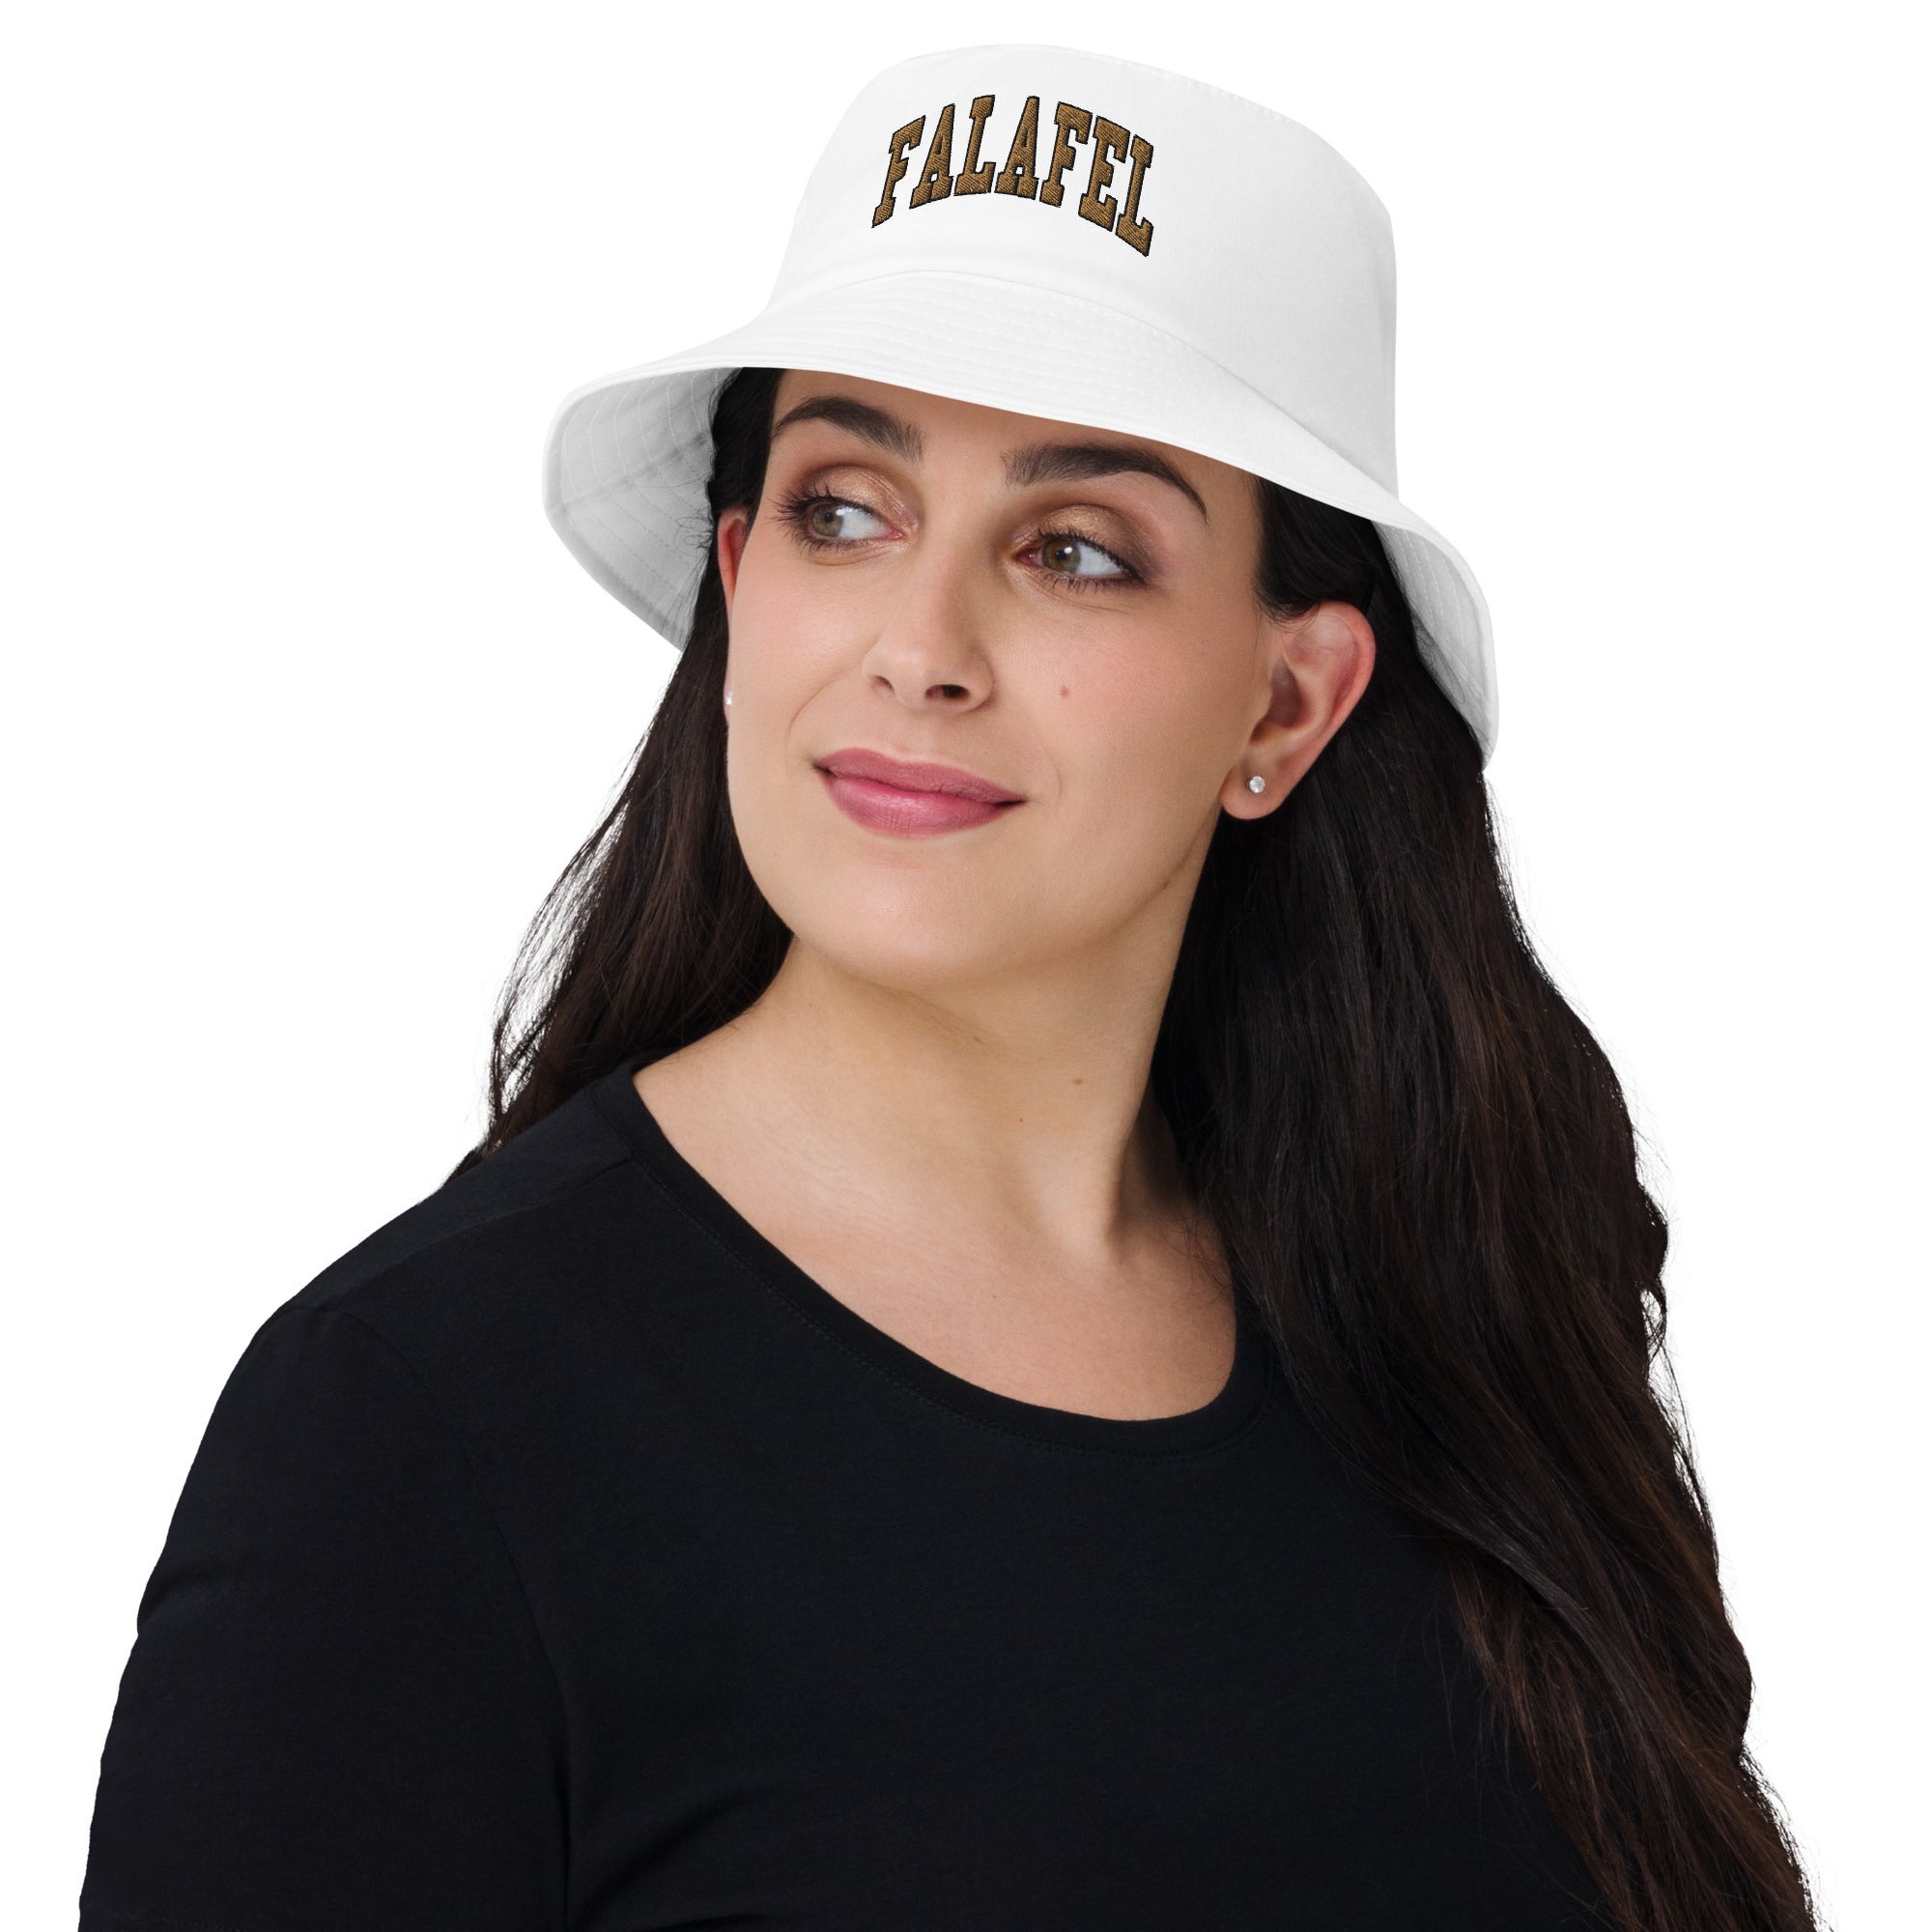 Falafel - Embroidered Bucket Hat